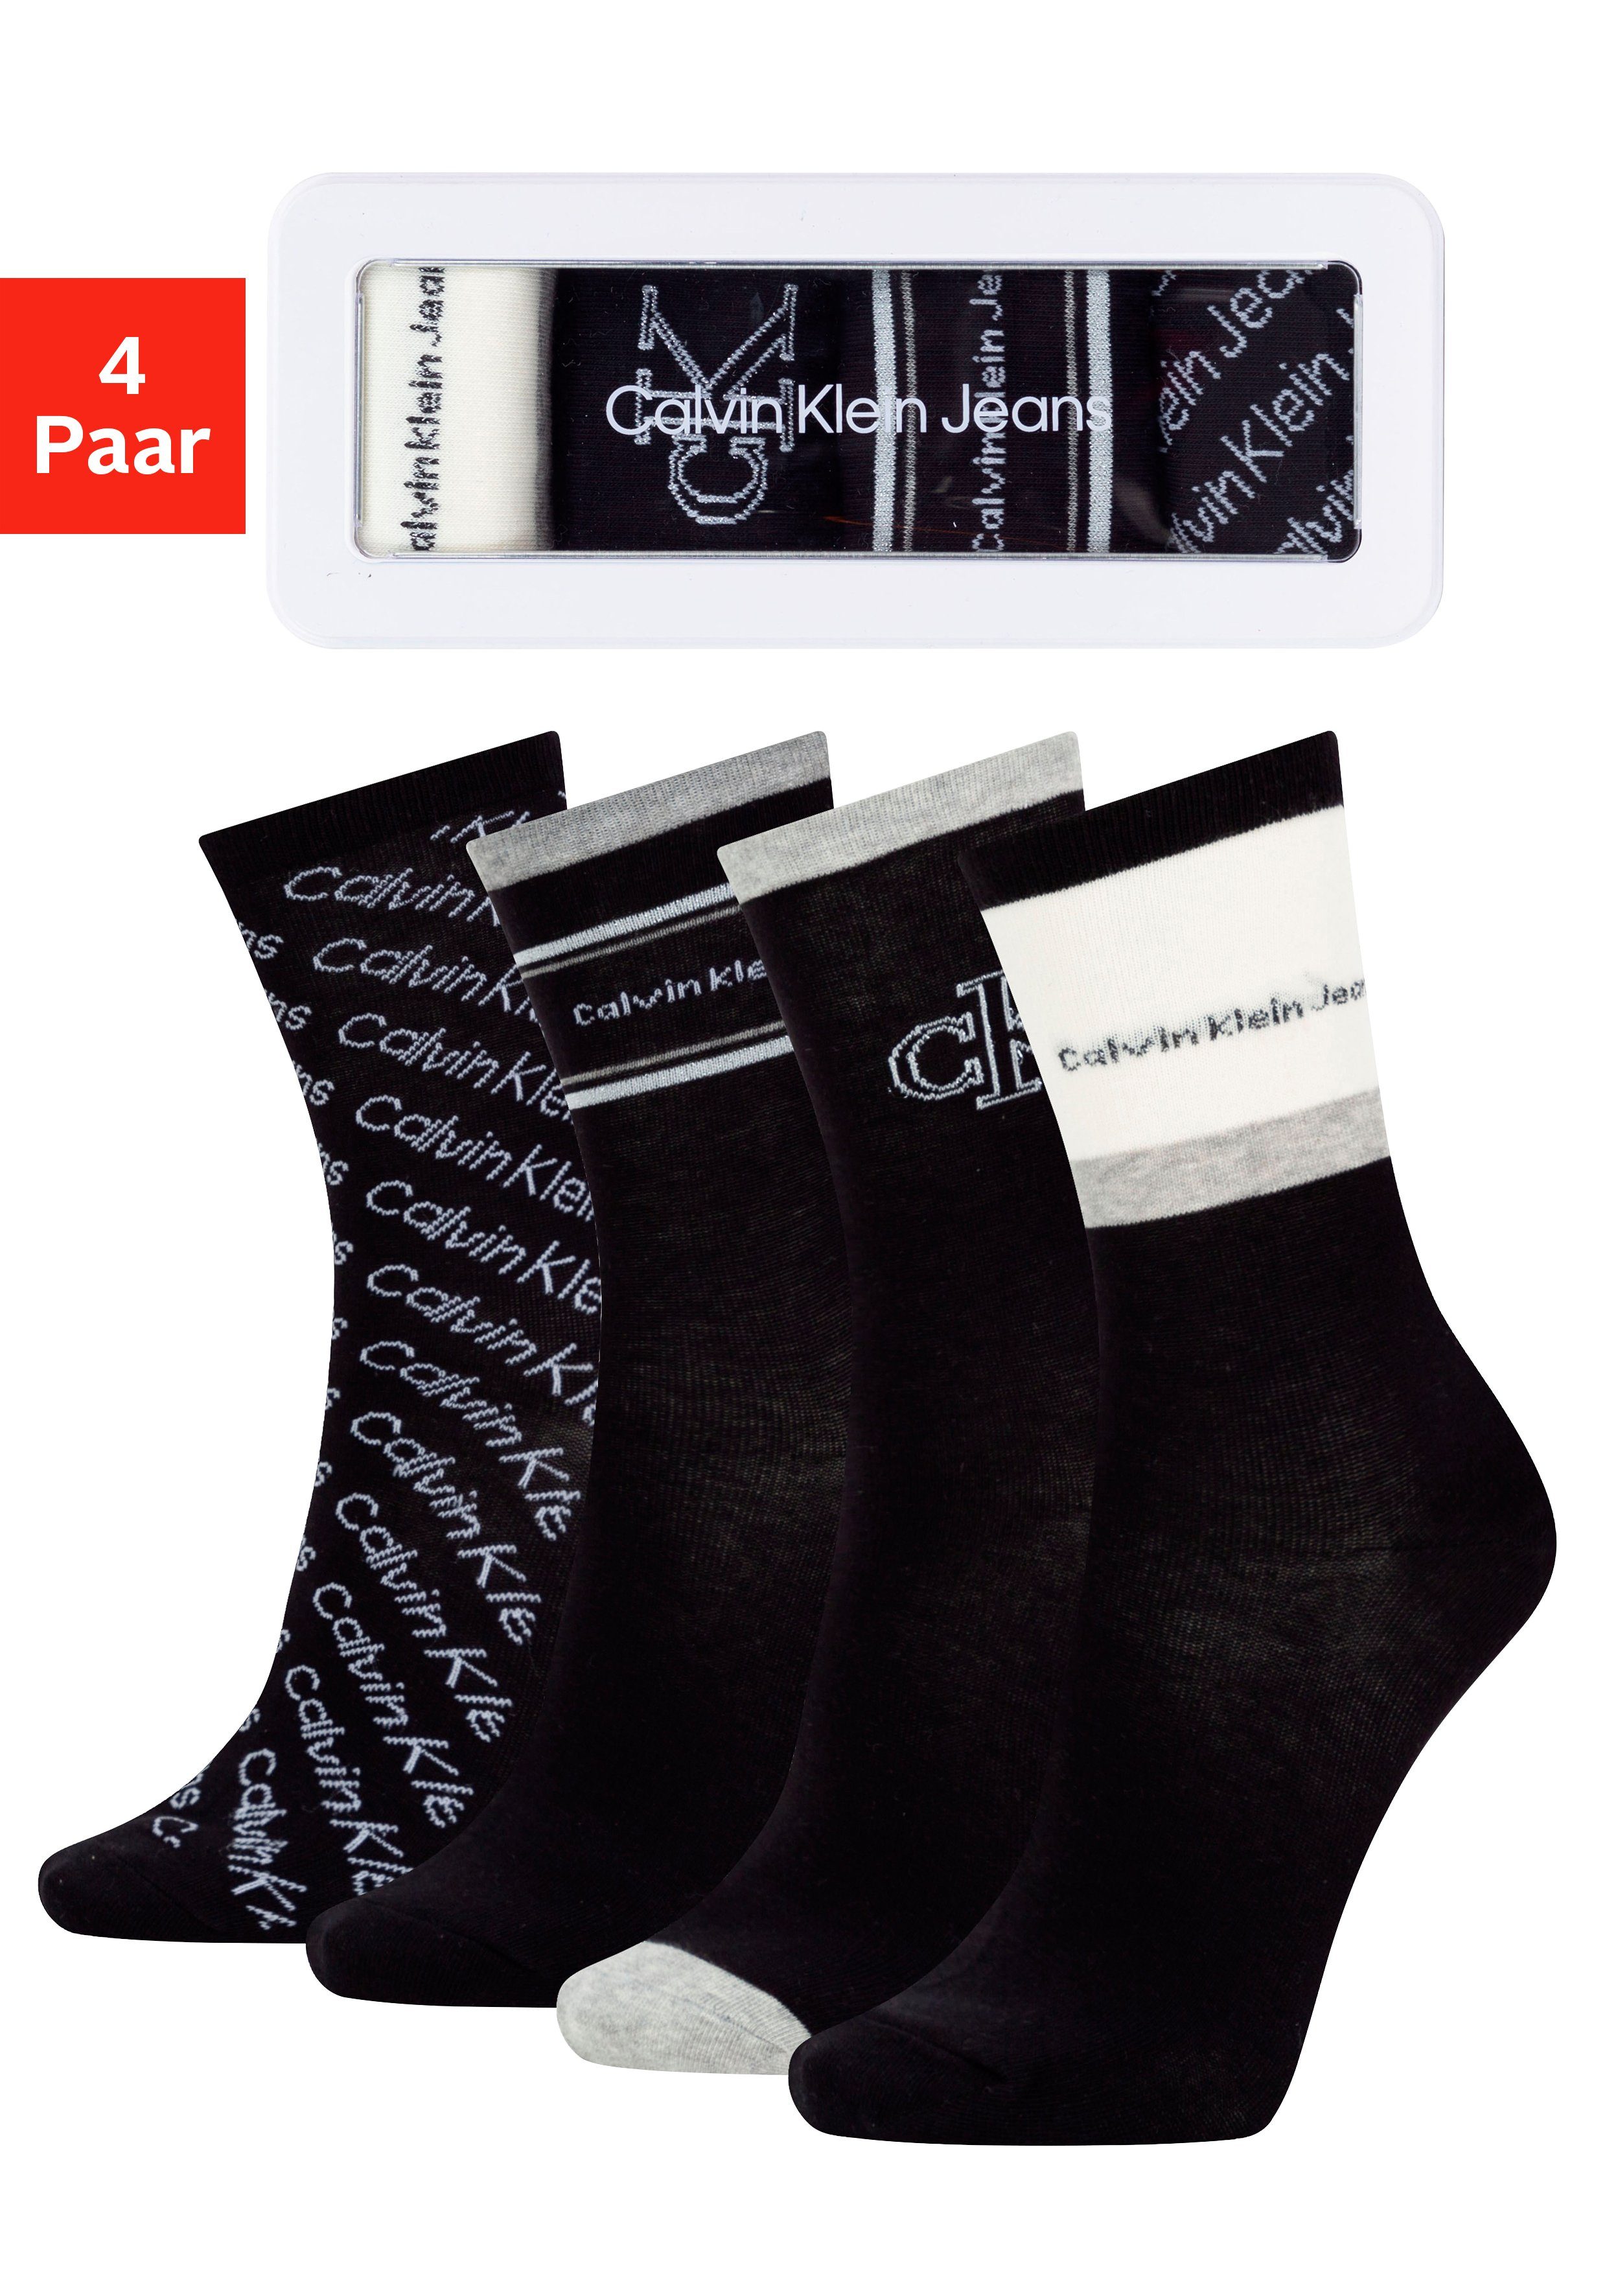 Calvin Klein Socken (Packung) in wertiger Geschenkdose online kaufen | OTTO